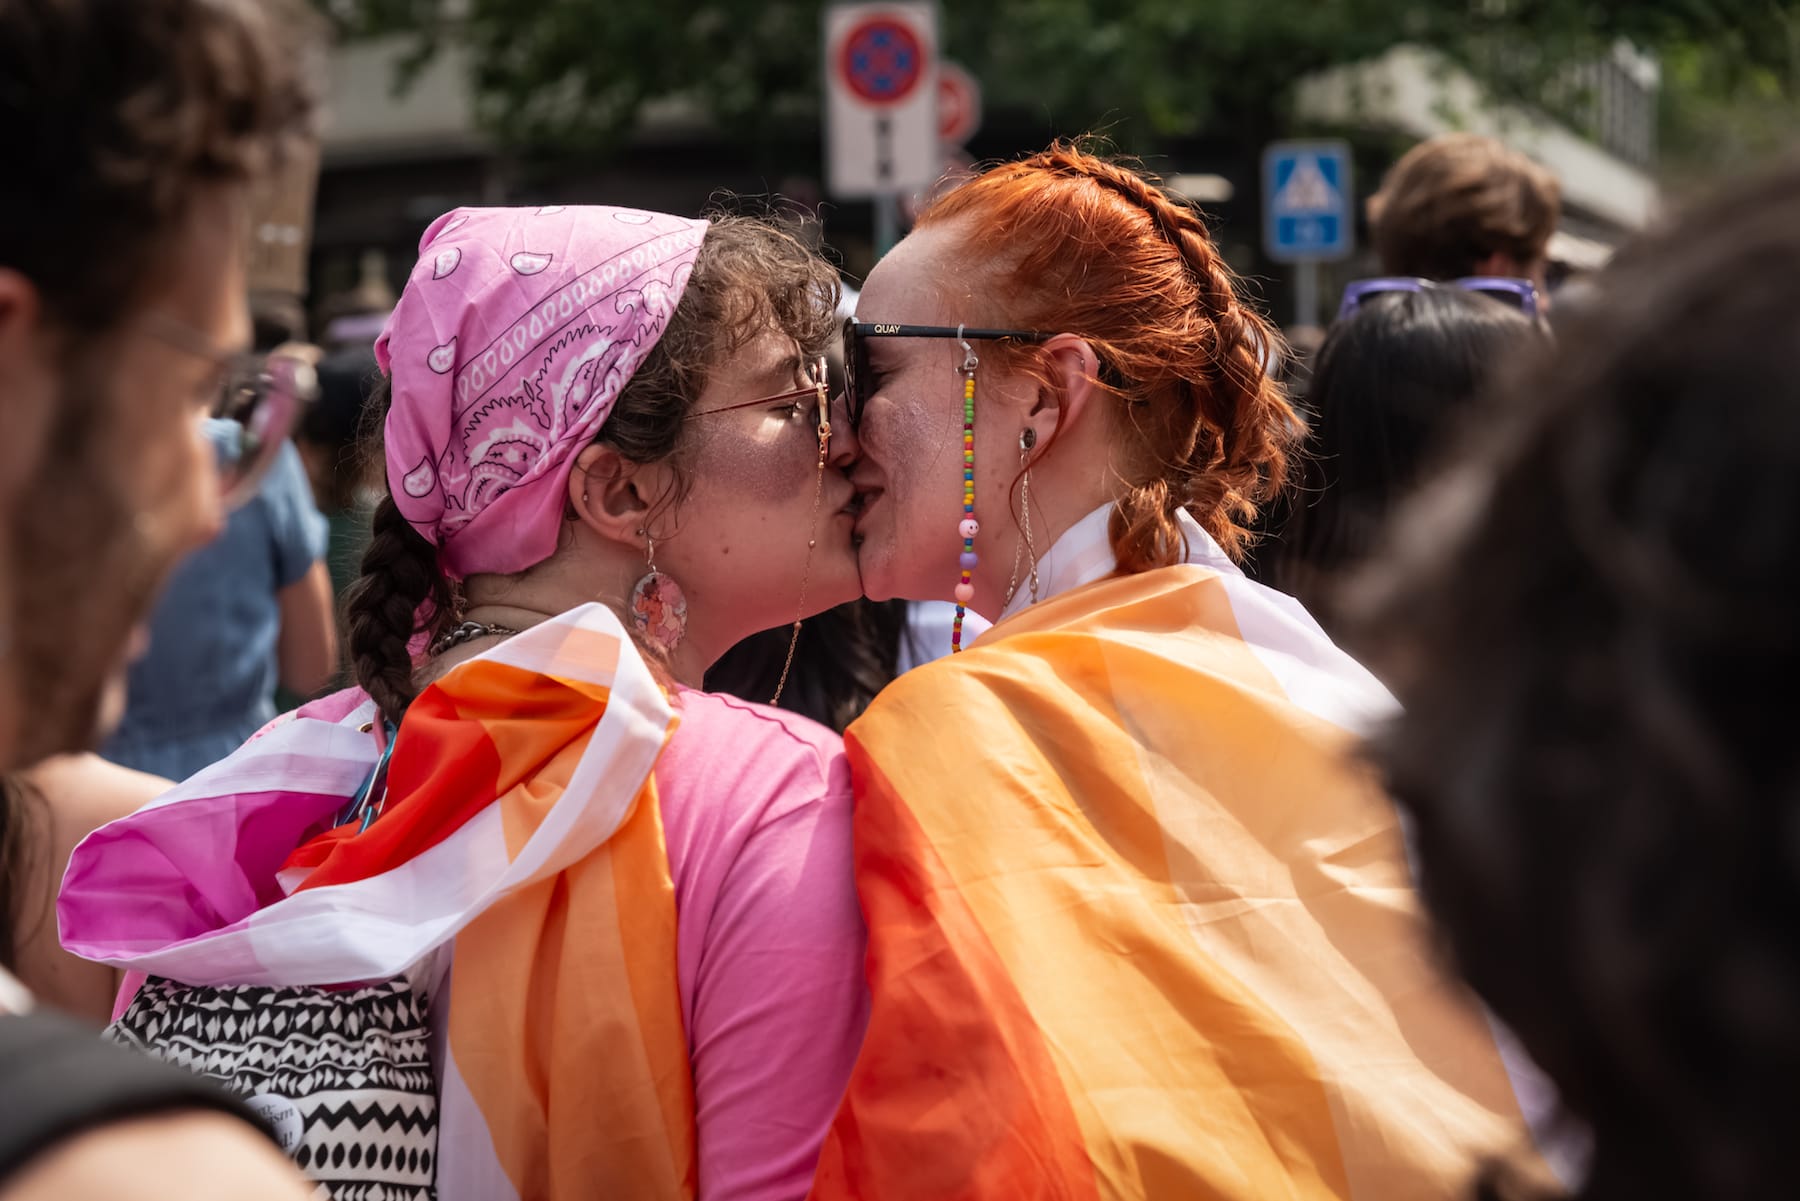 Liechtenstein has legalized same-sex marriage